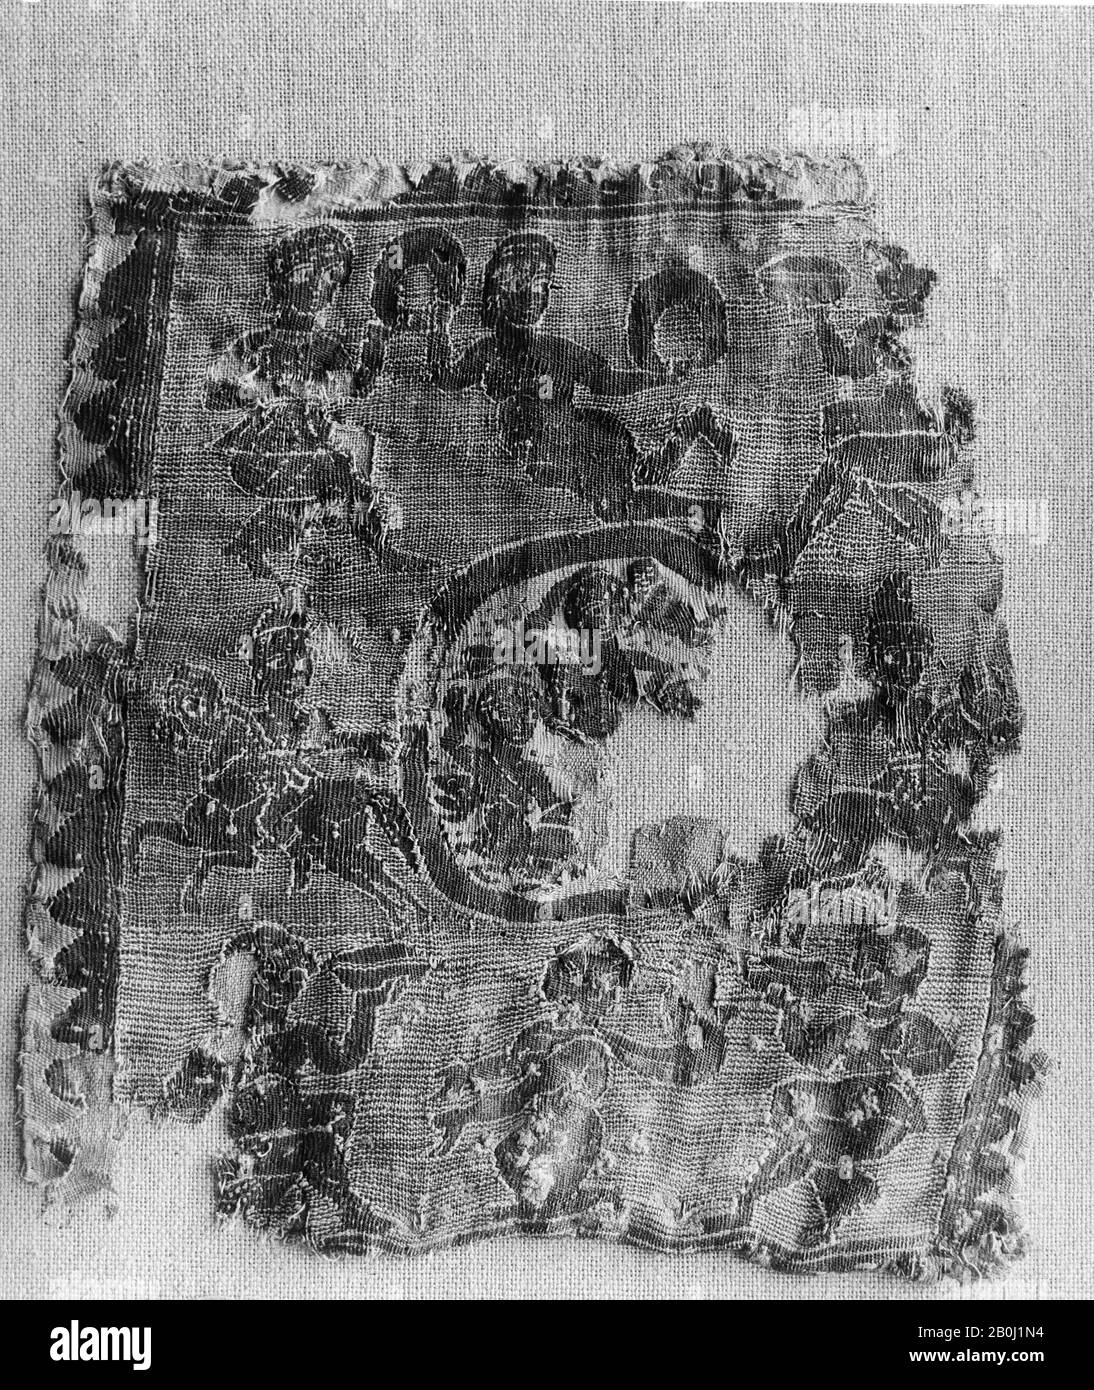 Fragment, 4ème siècle, Attribué à l'Egypte, laine, lin; tissage tapisserie, 9 13/16 in. Haut 9 13/16 in. Large (25 cm de haut 25 cm de large), textiles Banque D'Images